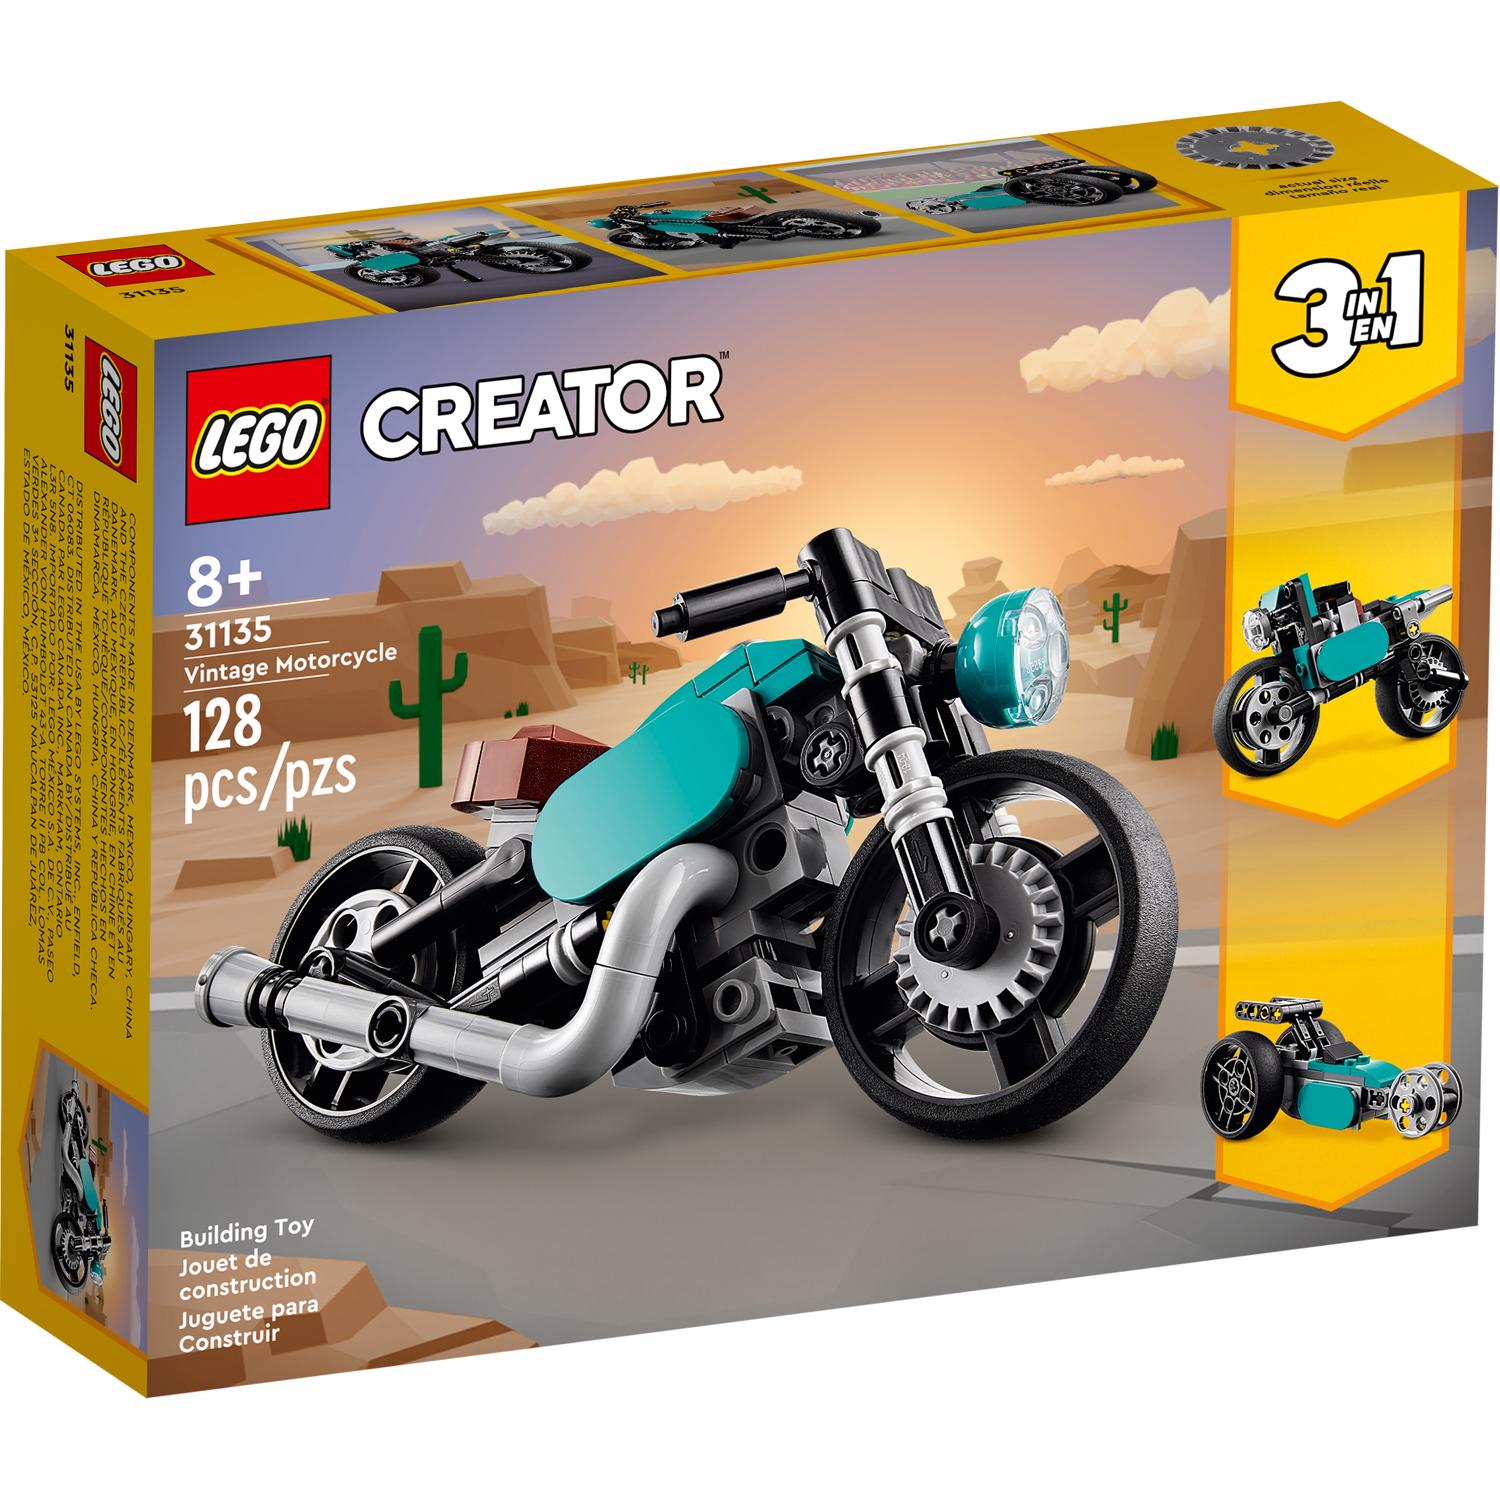 Photos - Construction Toy Lego Creator Creator Vintage Motorcycle Multicolored 128 pc 31135 